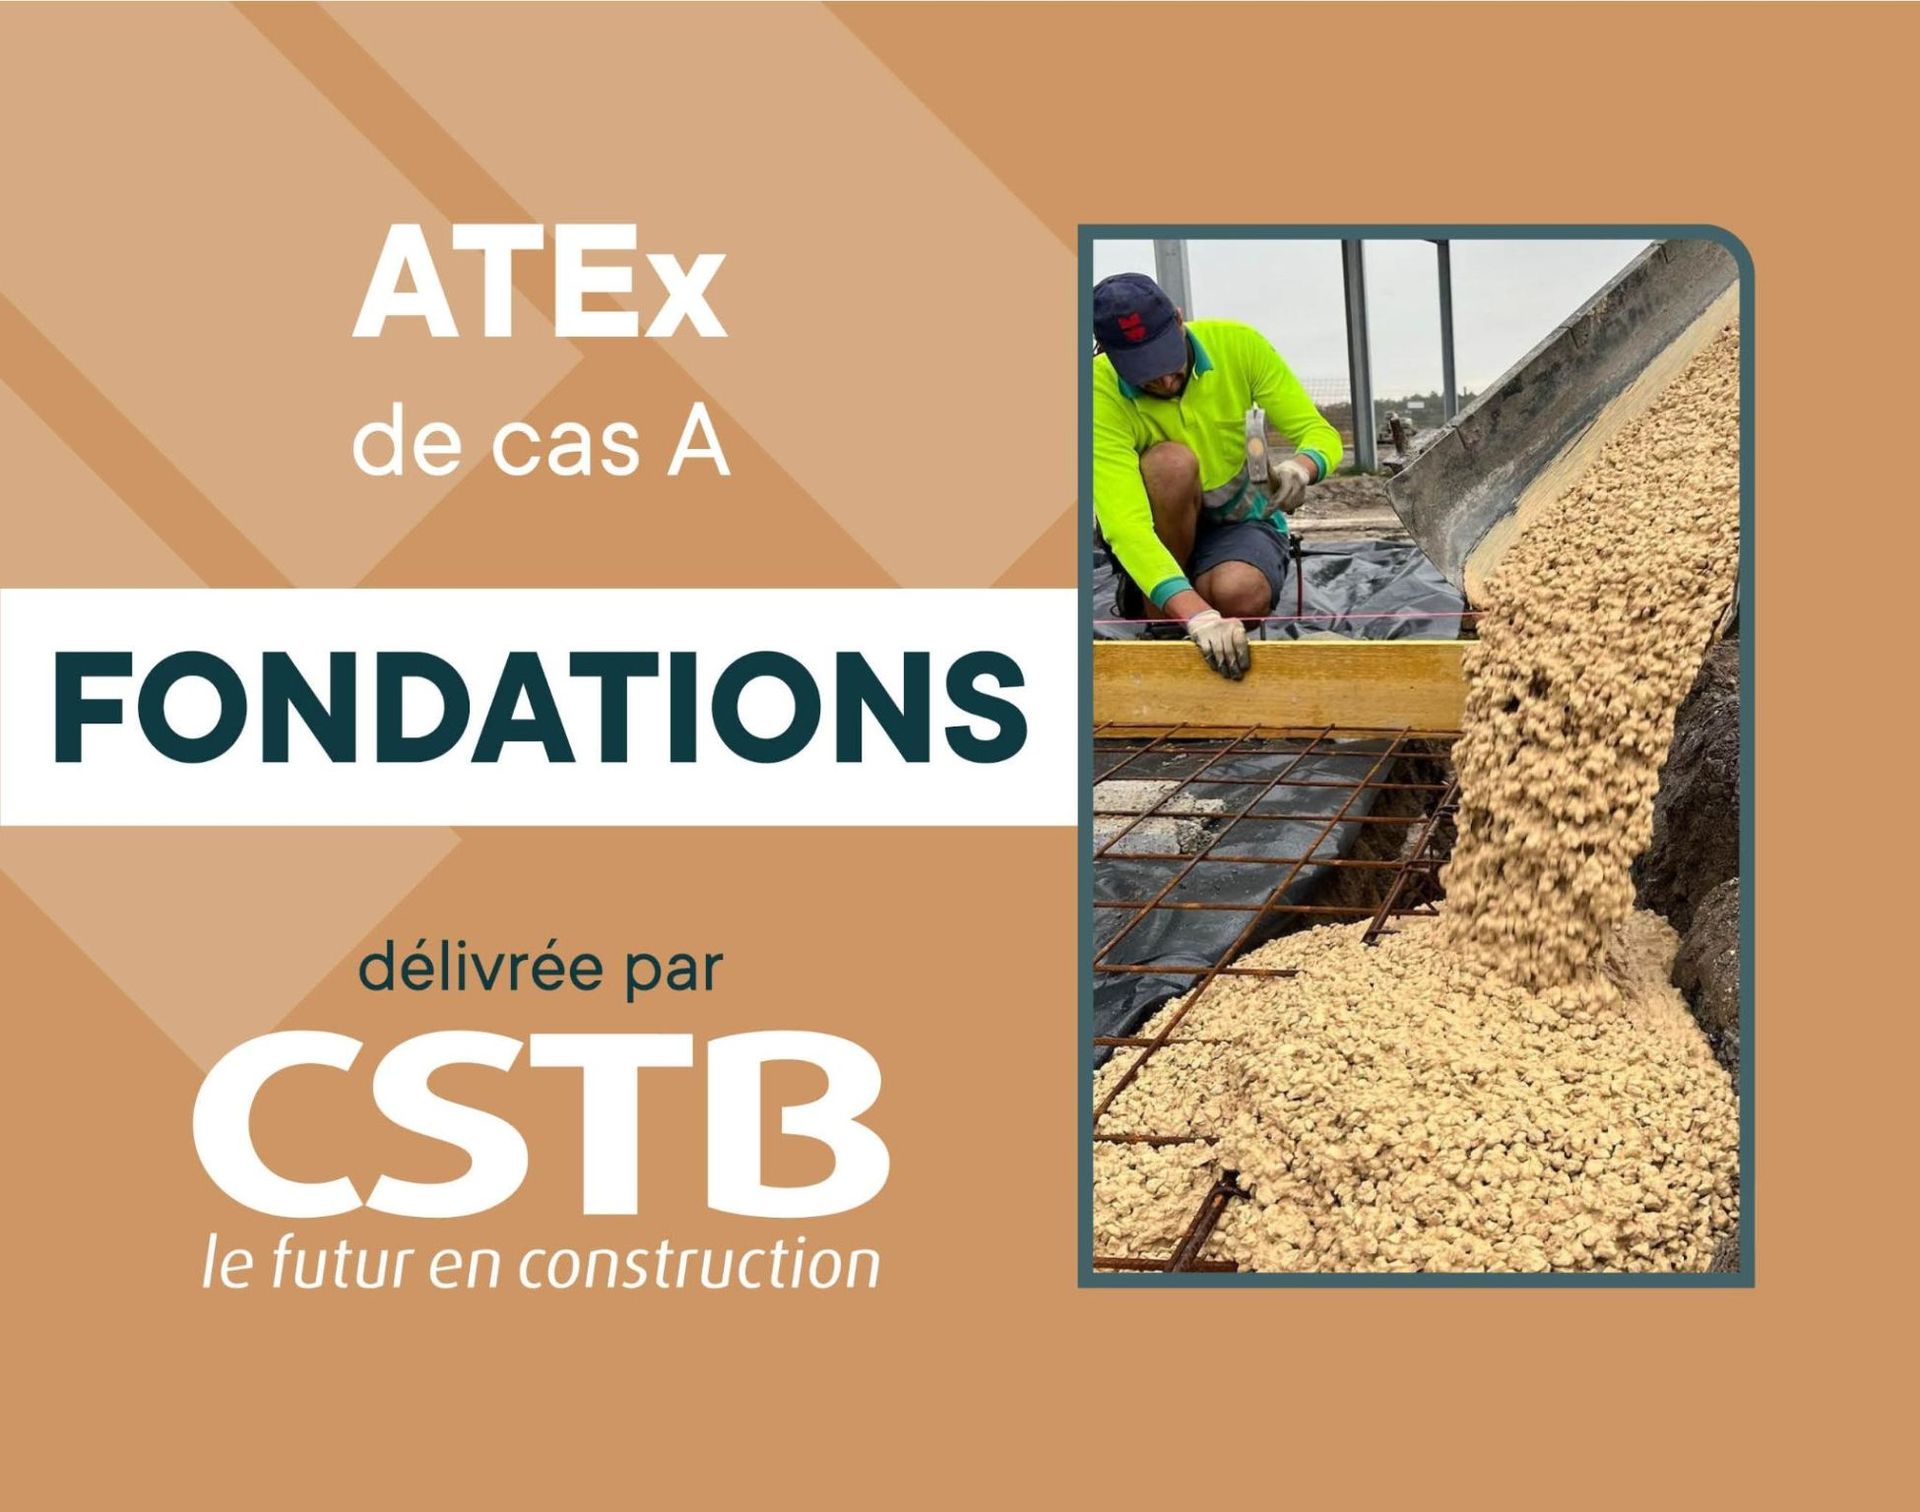 ATEX fondations CSTB Materrup